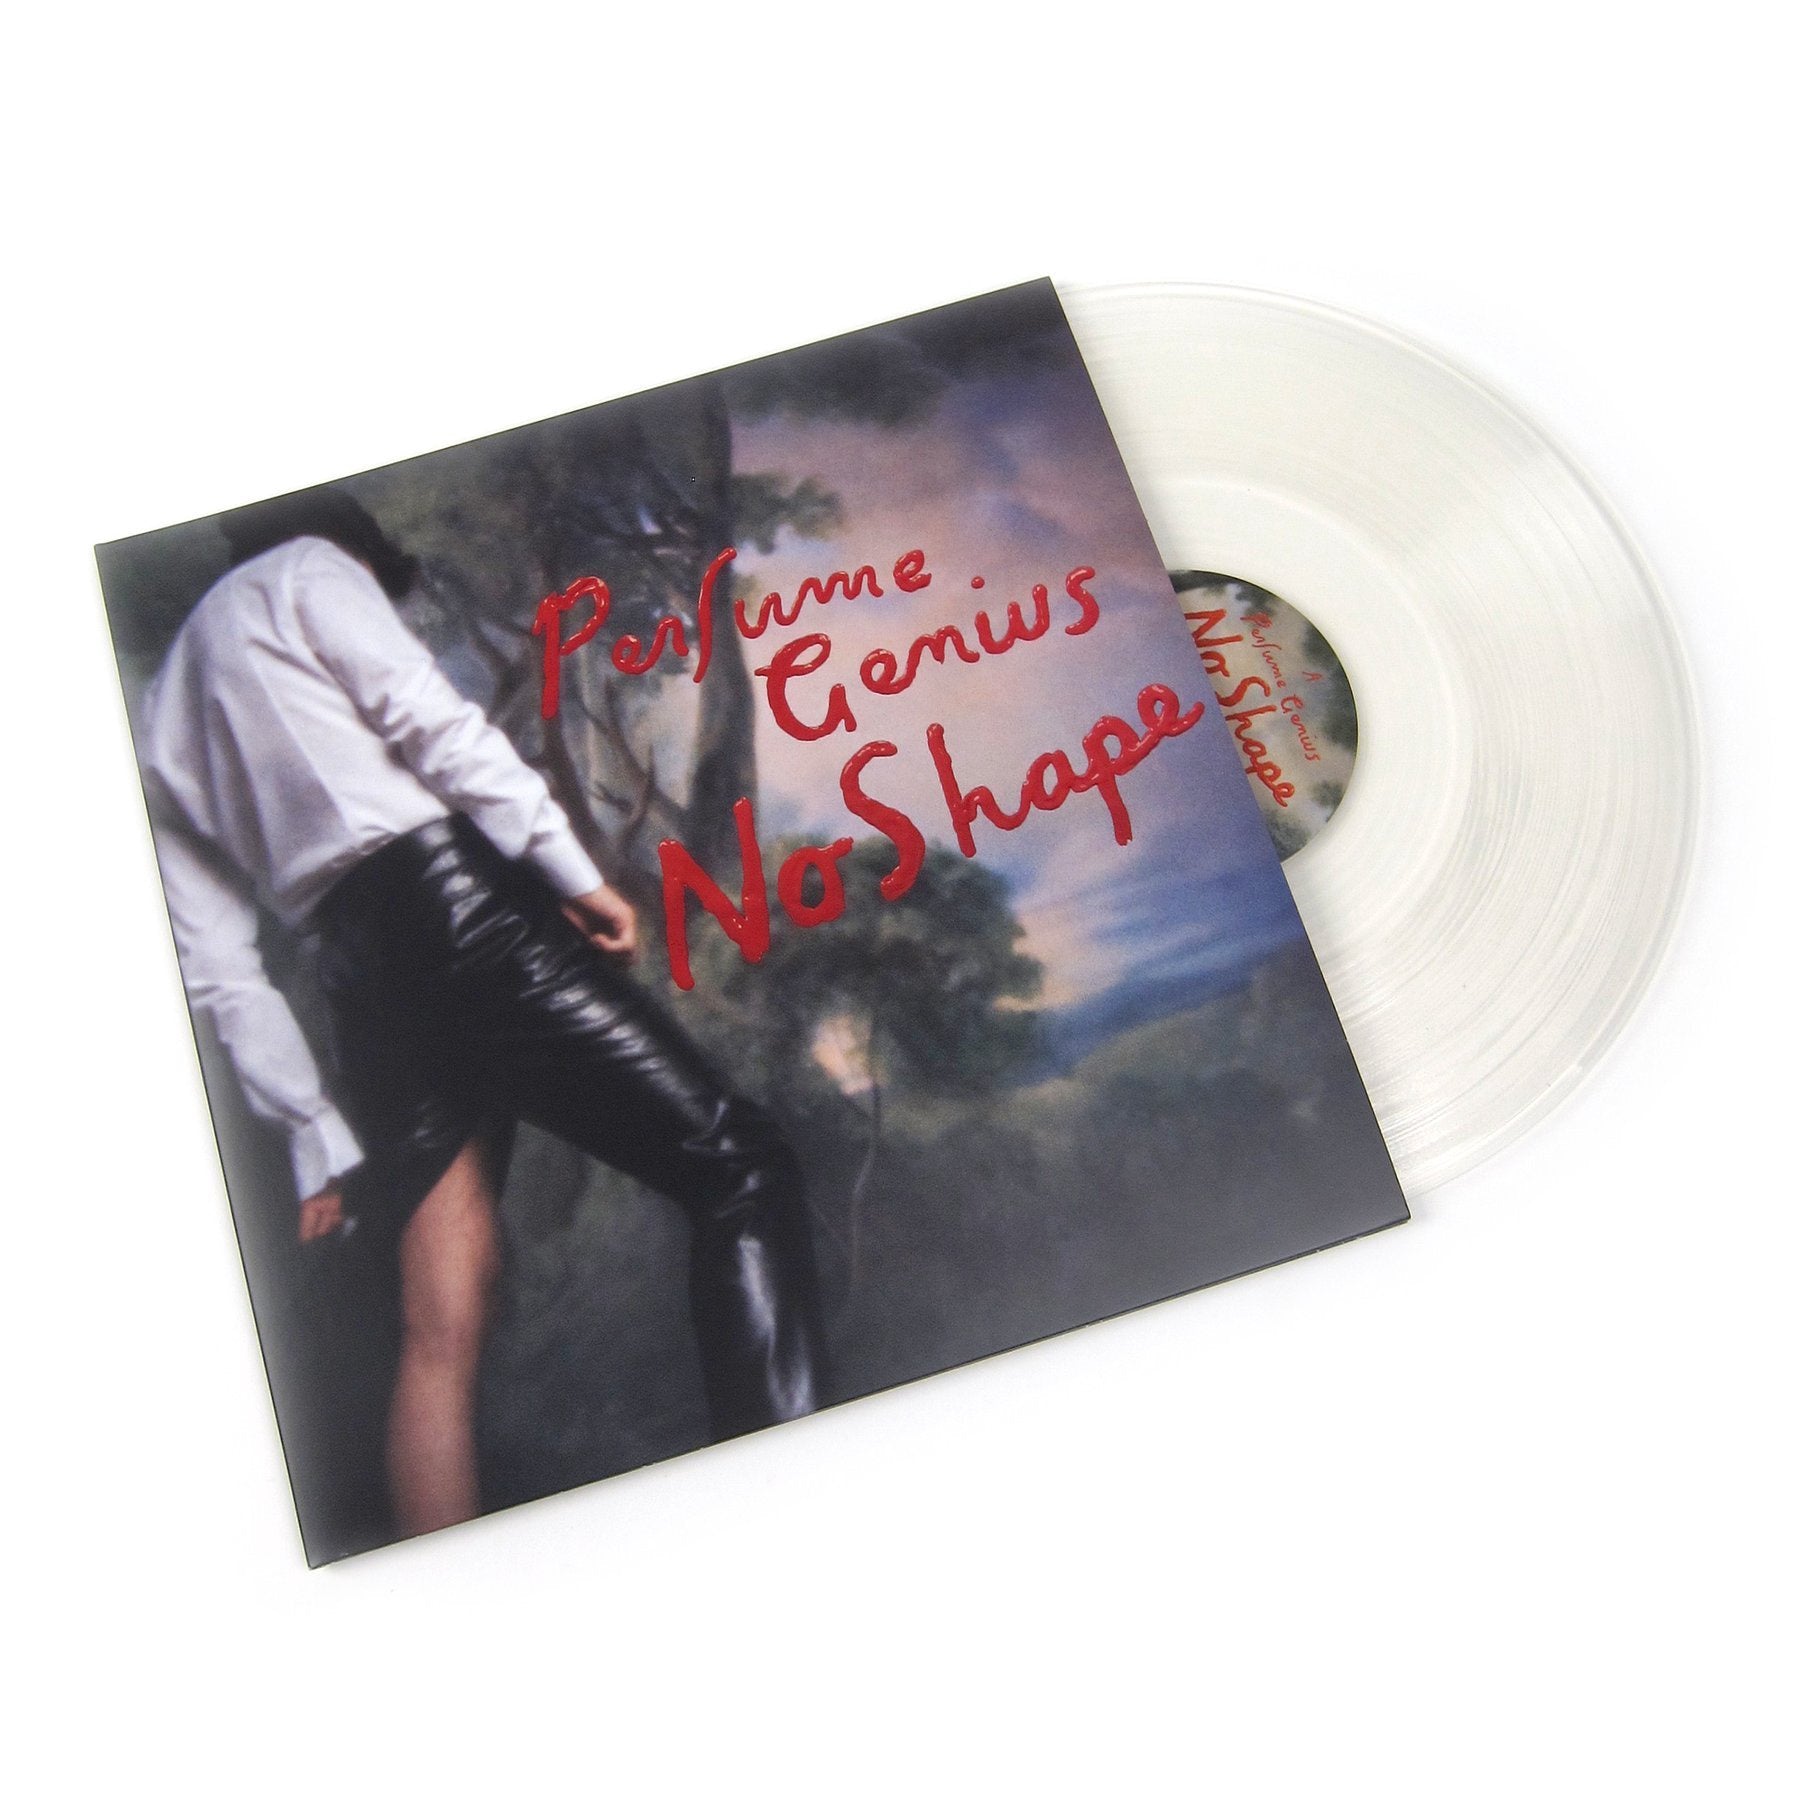 Perfume Genius ‎– No Shape - New 2 LP Record 2017 Matador Clear Vinyl & Download - Pop Rock / Art Rock / Ethereal